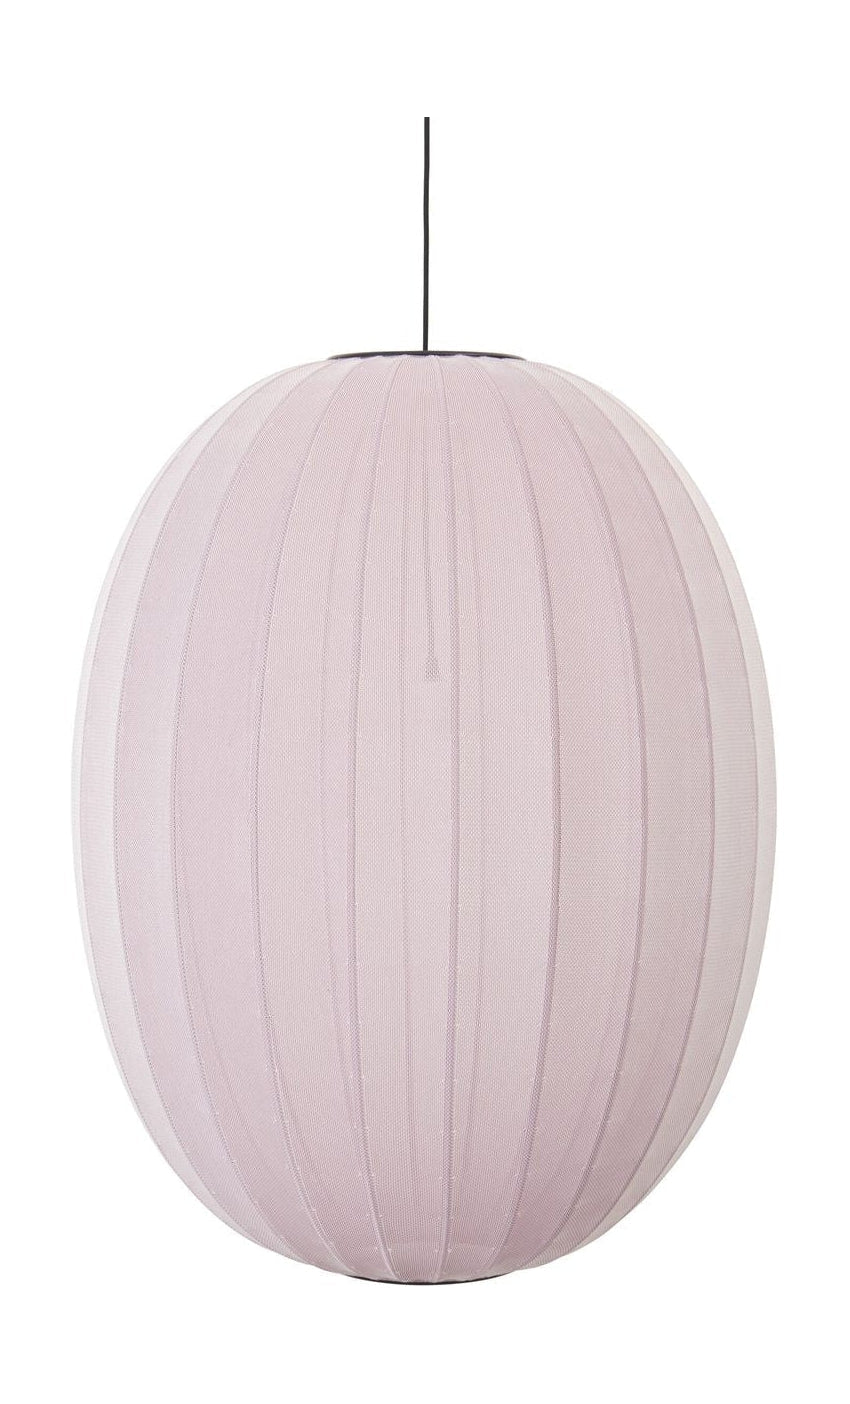 Made By Hand Sticka med 65 Hög Oval Pendant Lamp, ljusrosa